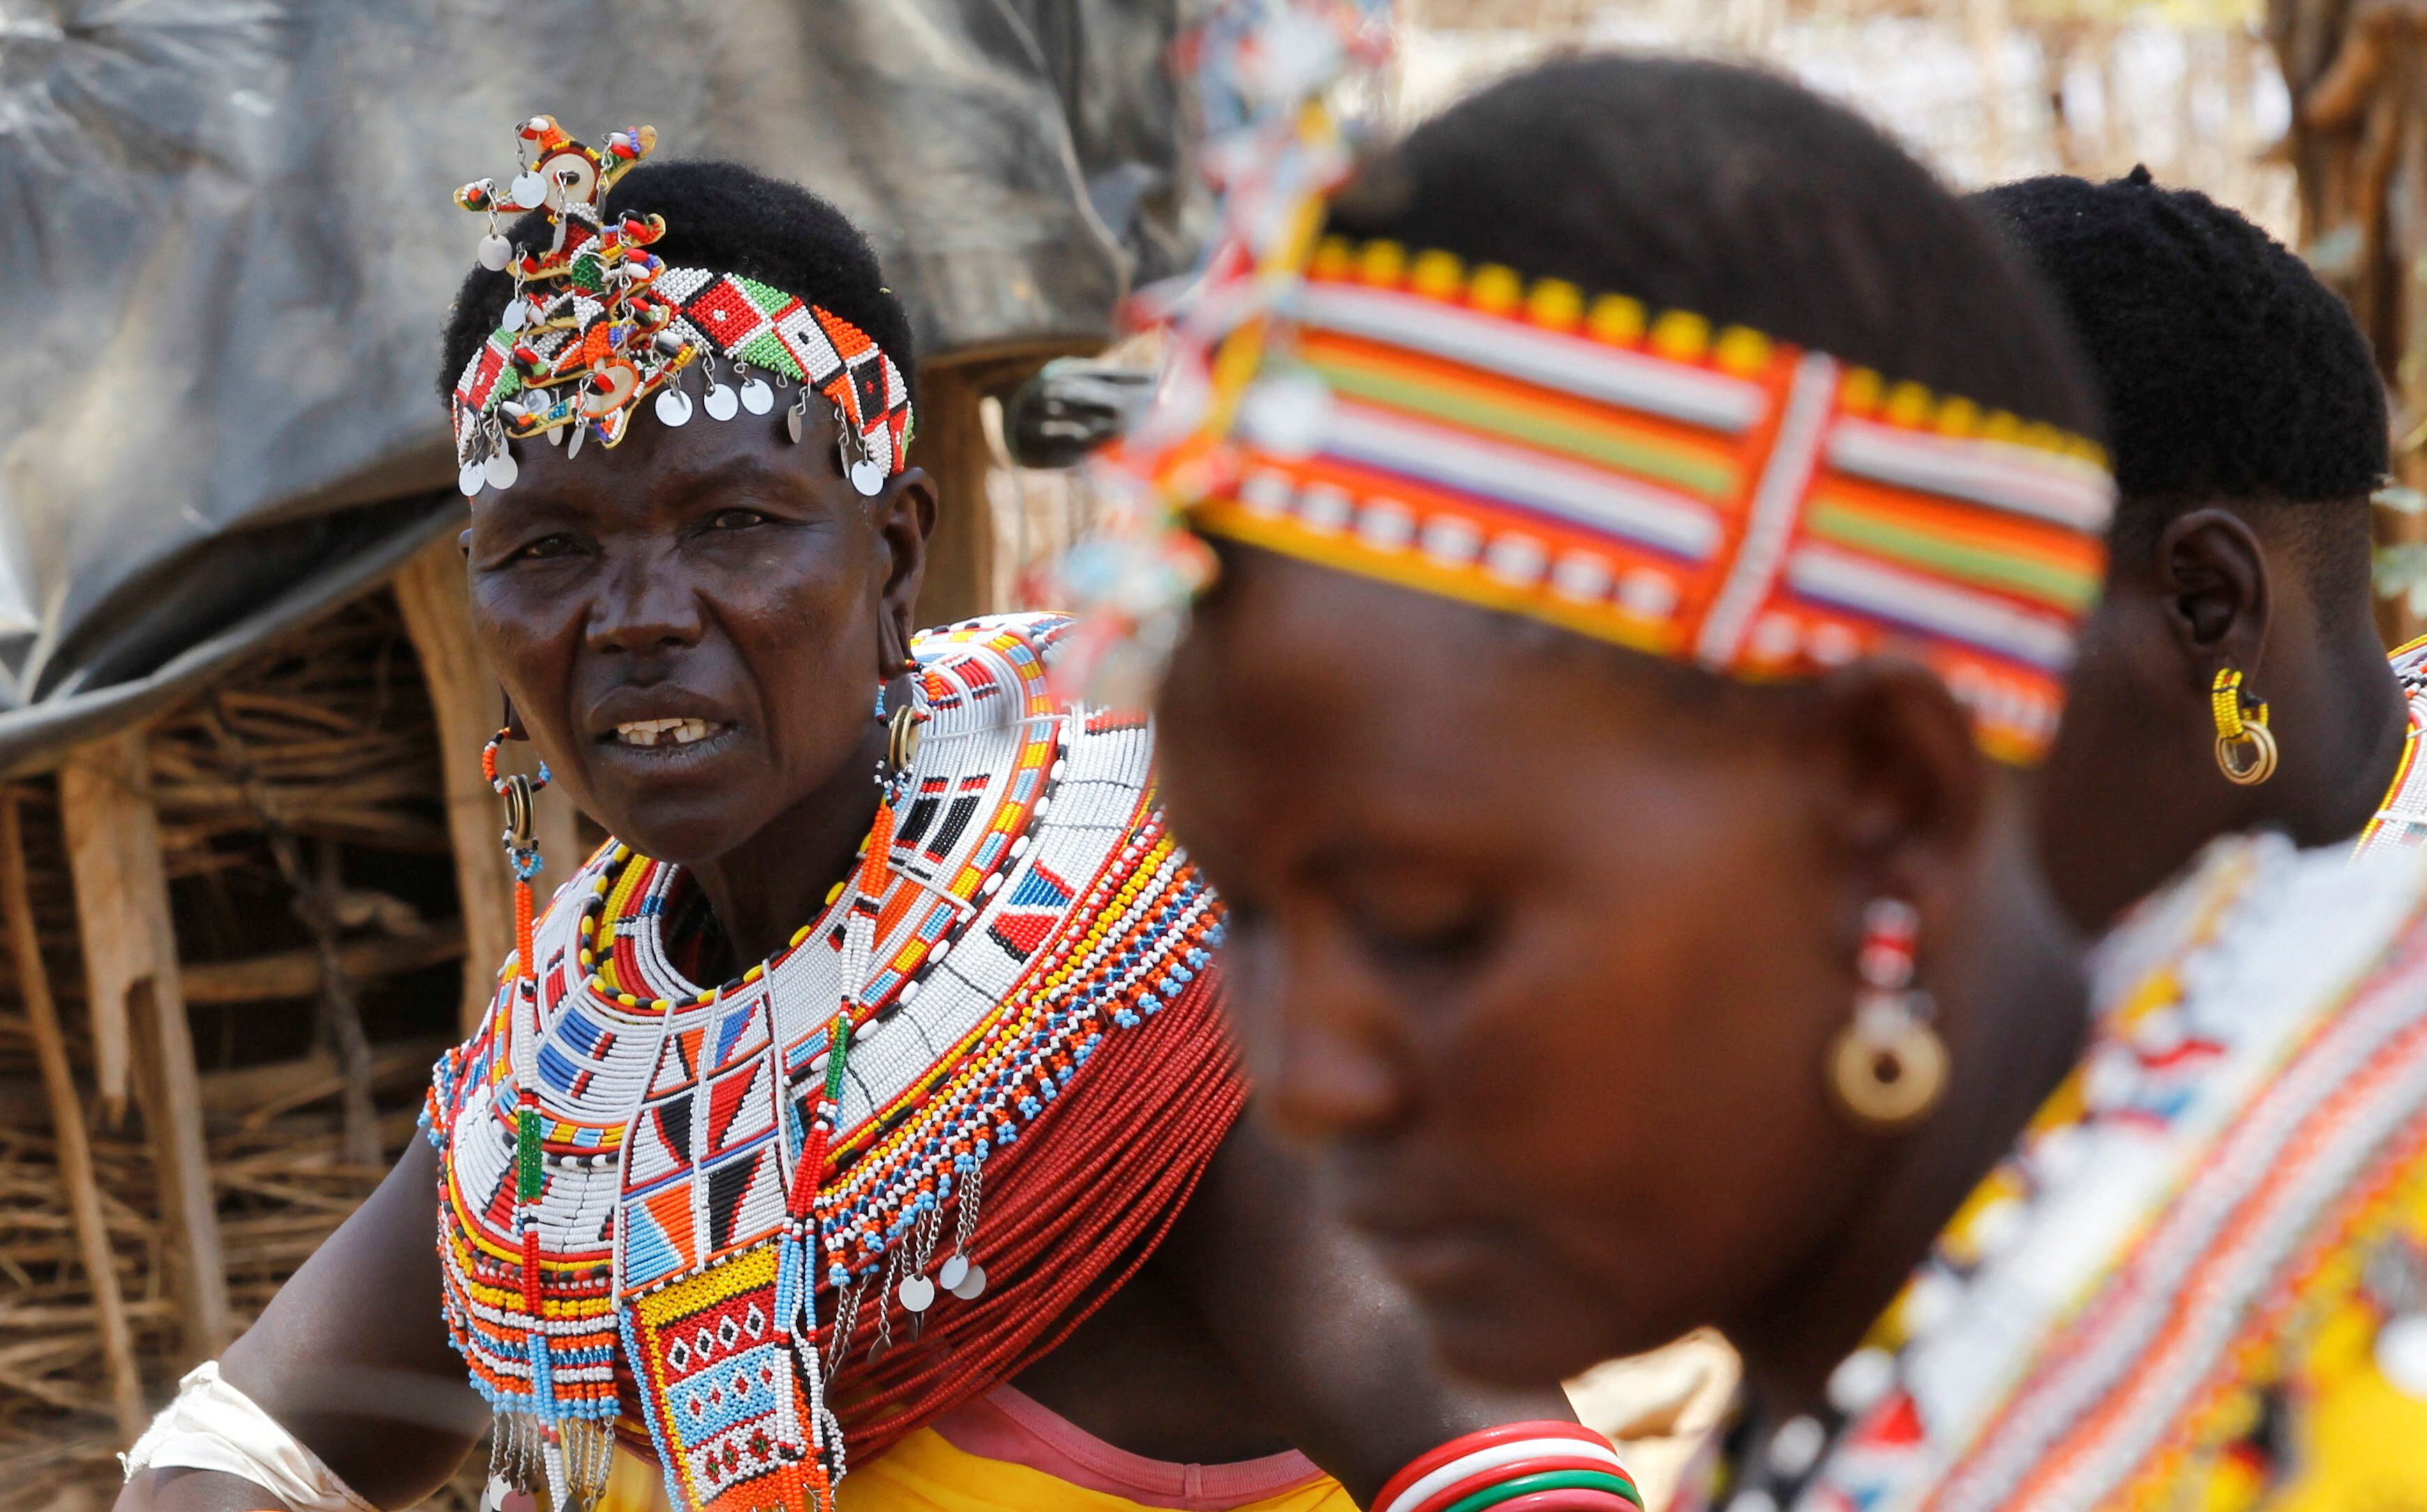 Jane Nomuken es dirigente de la aldea keniata Umoja, compuesta por mujeres de la tribu Samburu que escaparon a la mutilación genital femenina -que en algunas zonas de ese país alcanza al 98% de las mujeres- y donde la presencia de hombres está restringida (REUTERS/Monicah Mwangi)